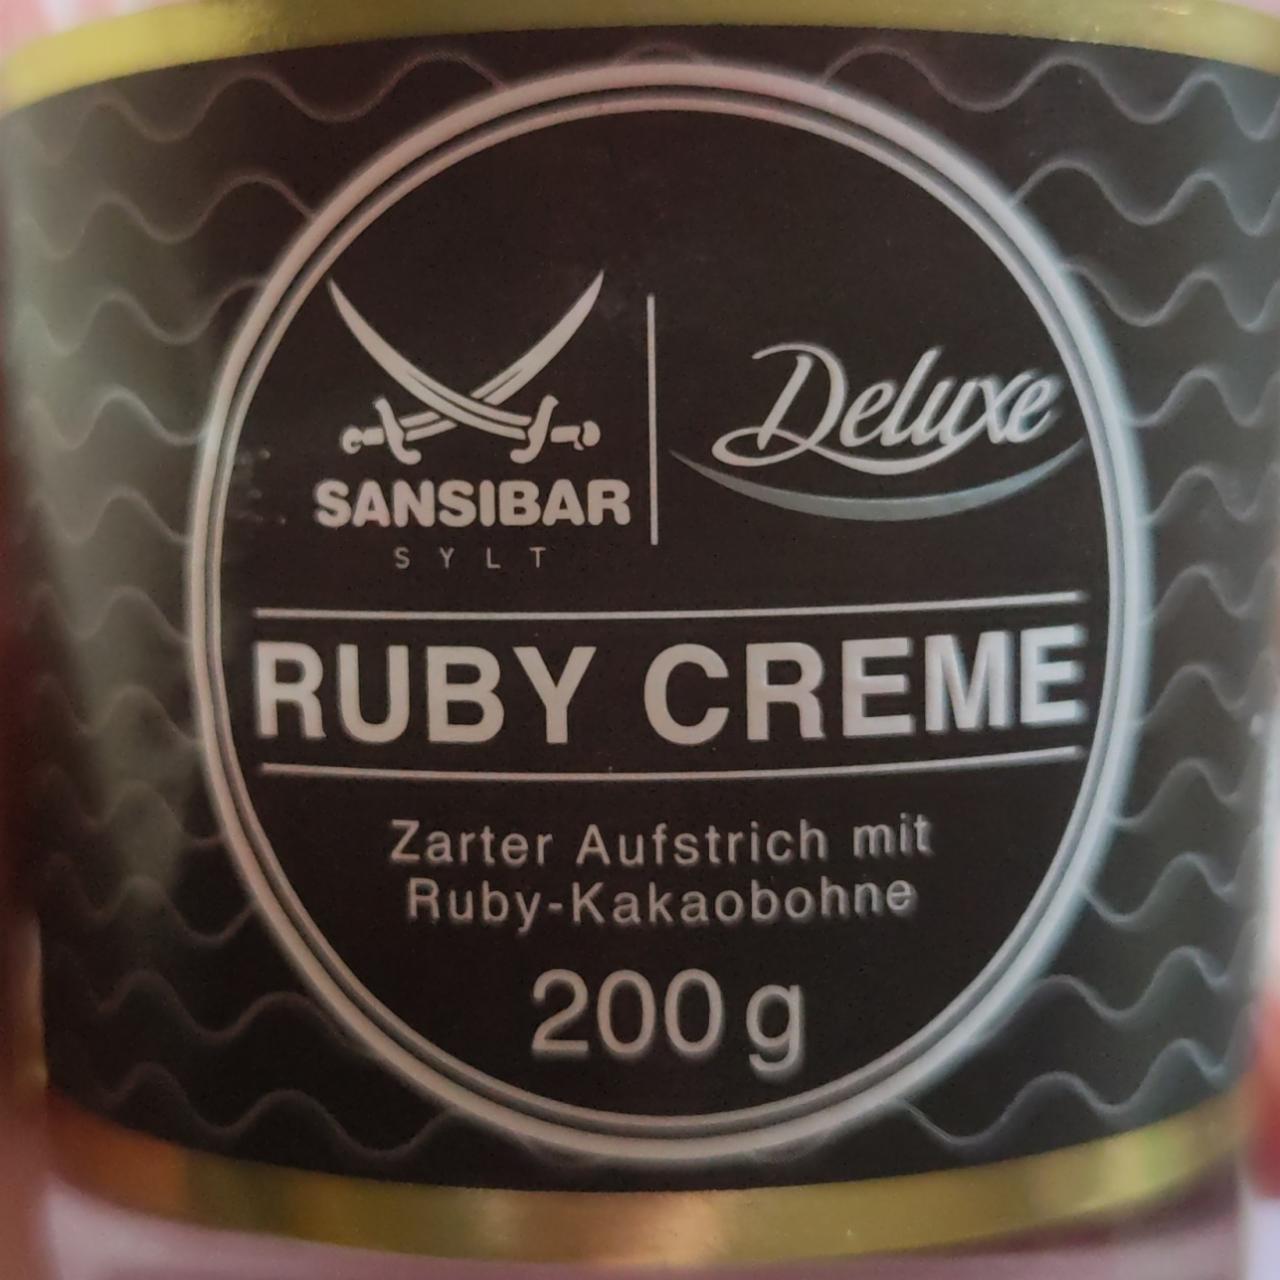 Фото - сладкая паста Руби крем Ruby Creme Deluxe